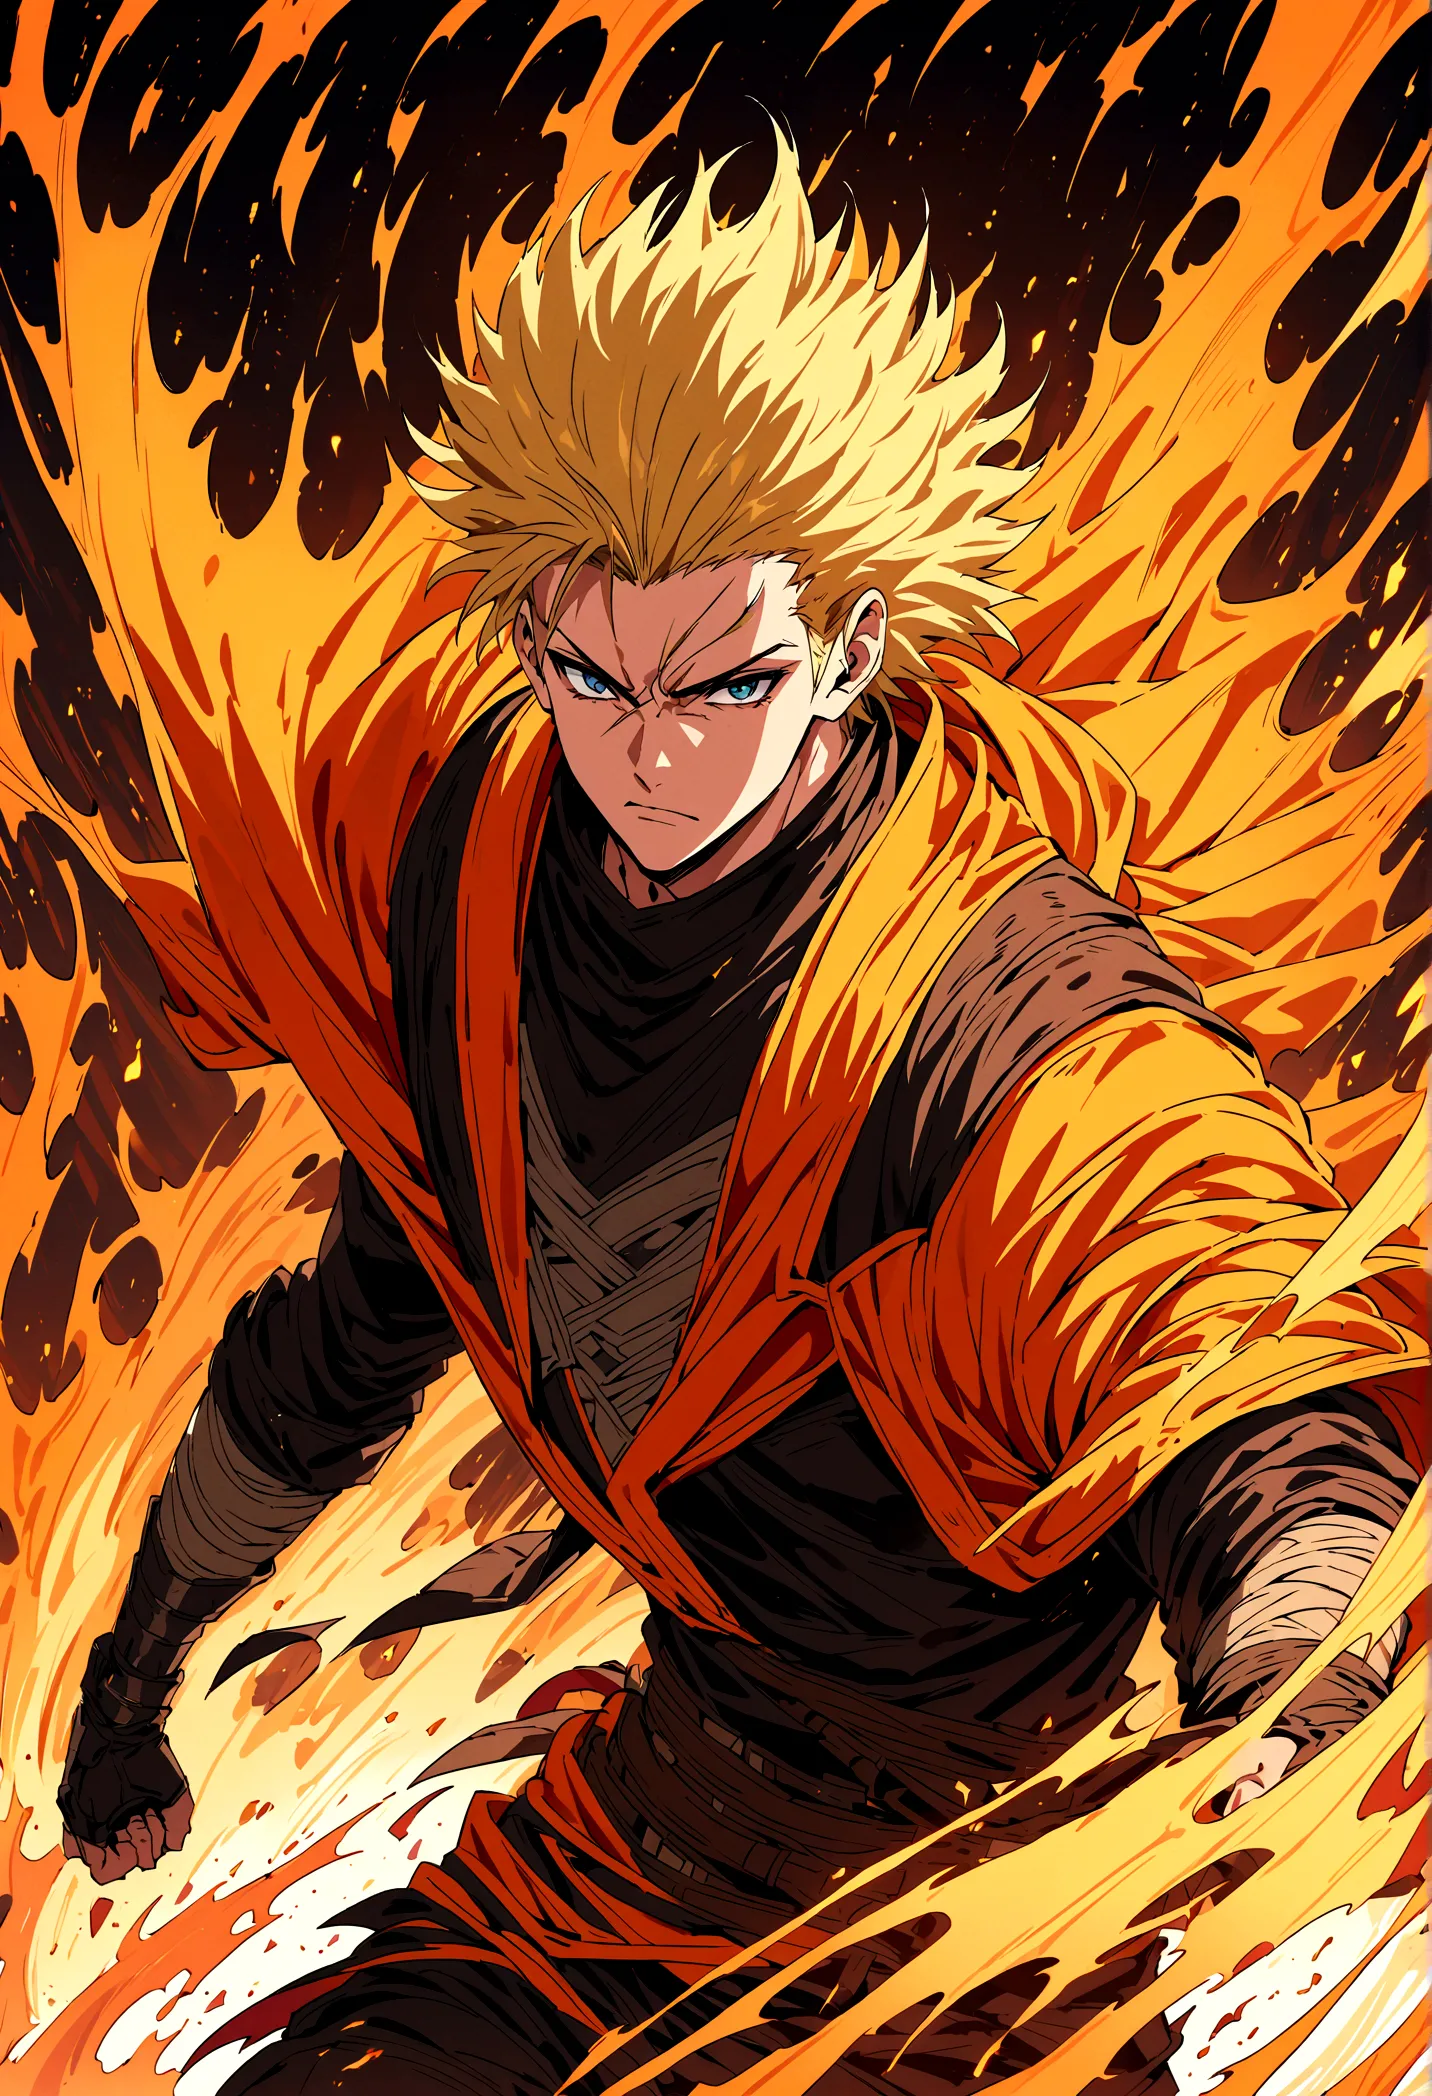 An anime fighter, assasin outfit, fire around him, short high fade hair, blonde hair, 